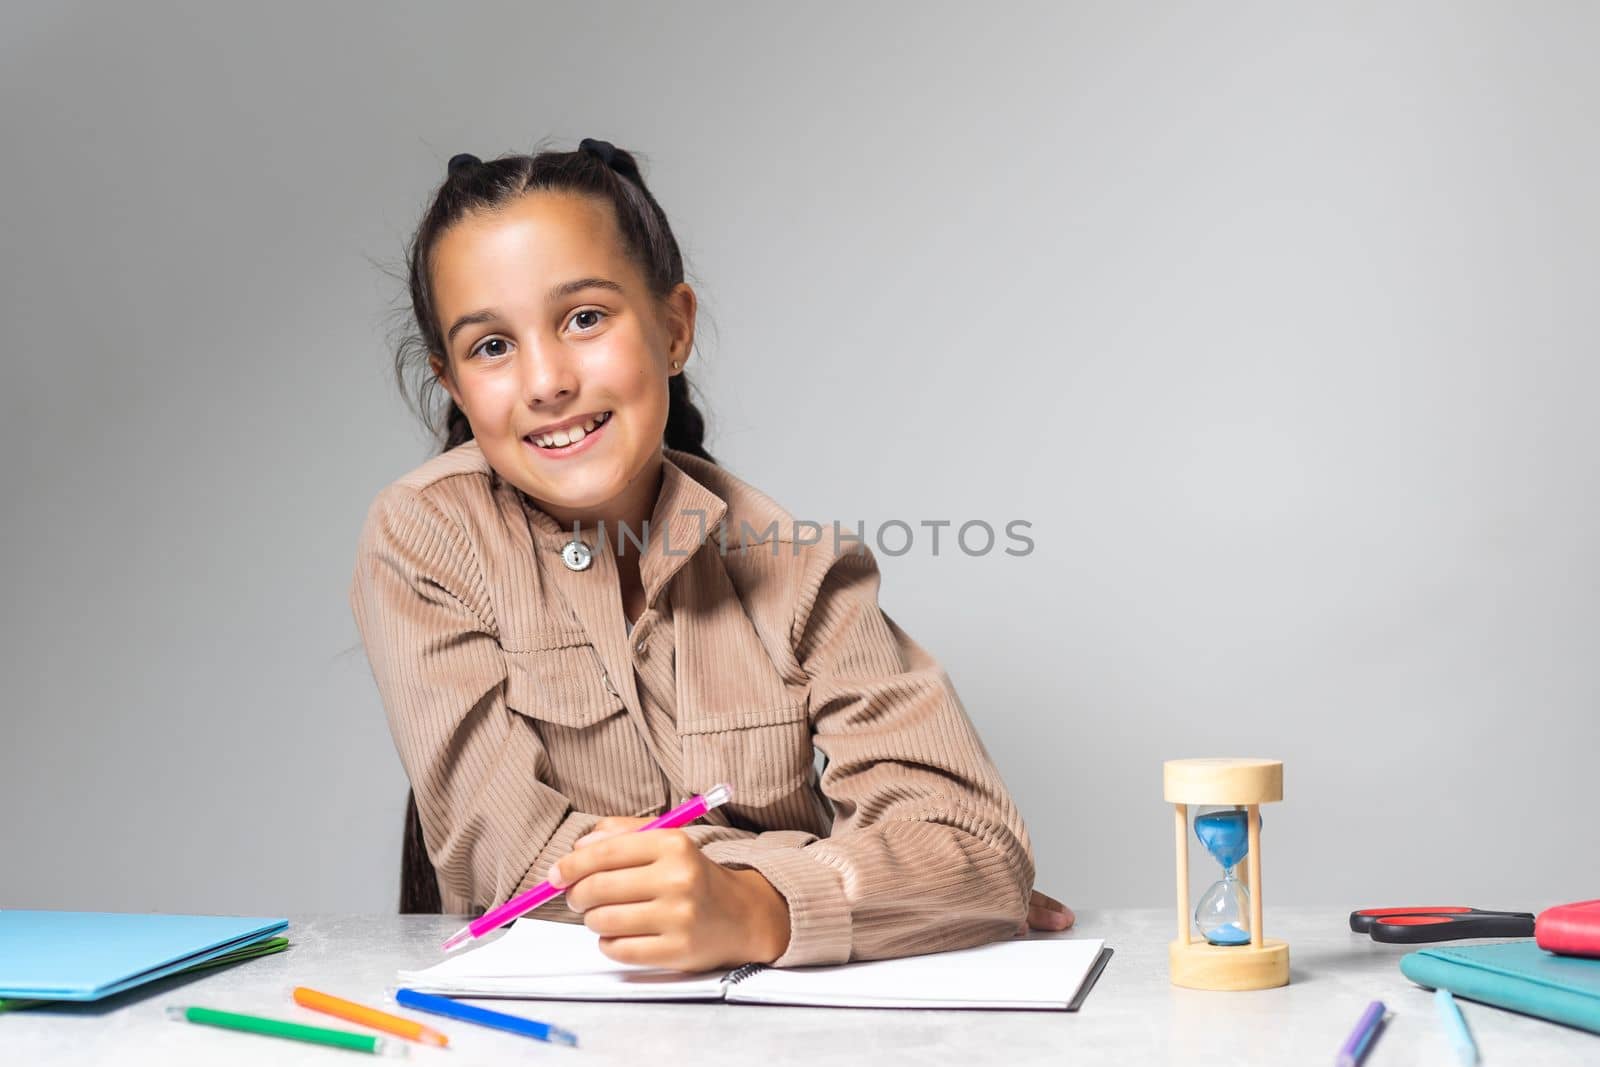 Little Girl doing homework on desk.